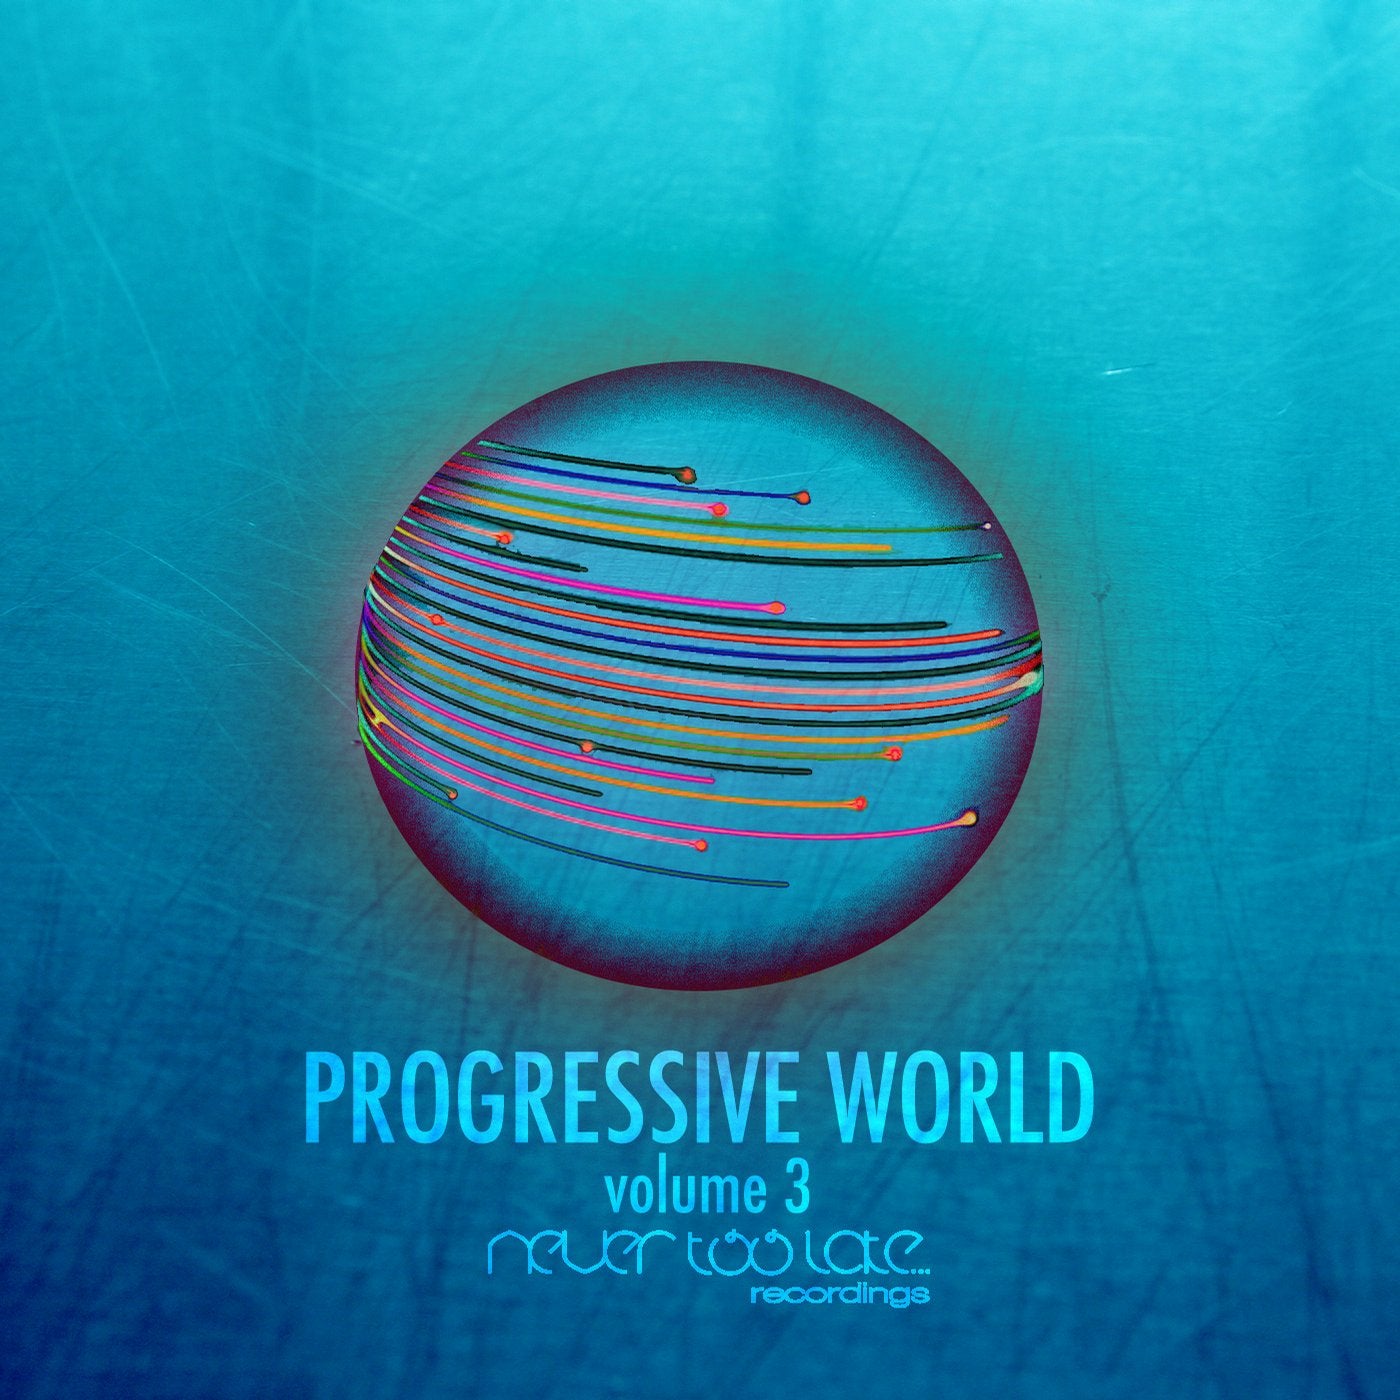 Progressive World Volume 3